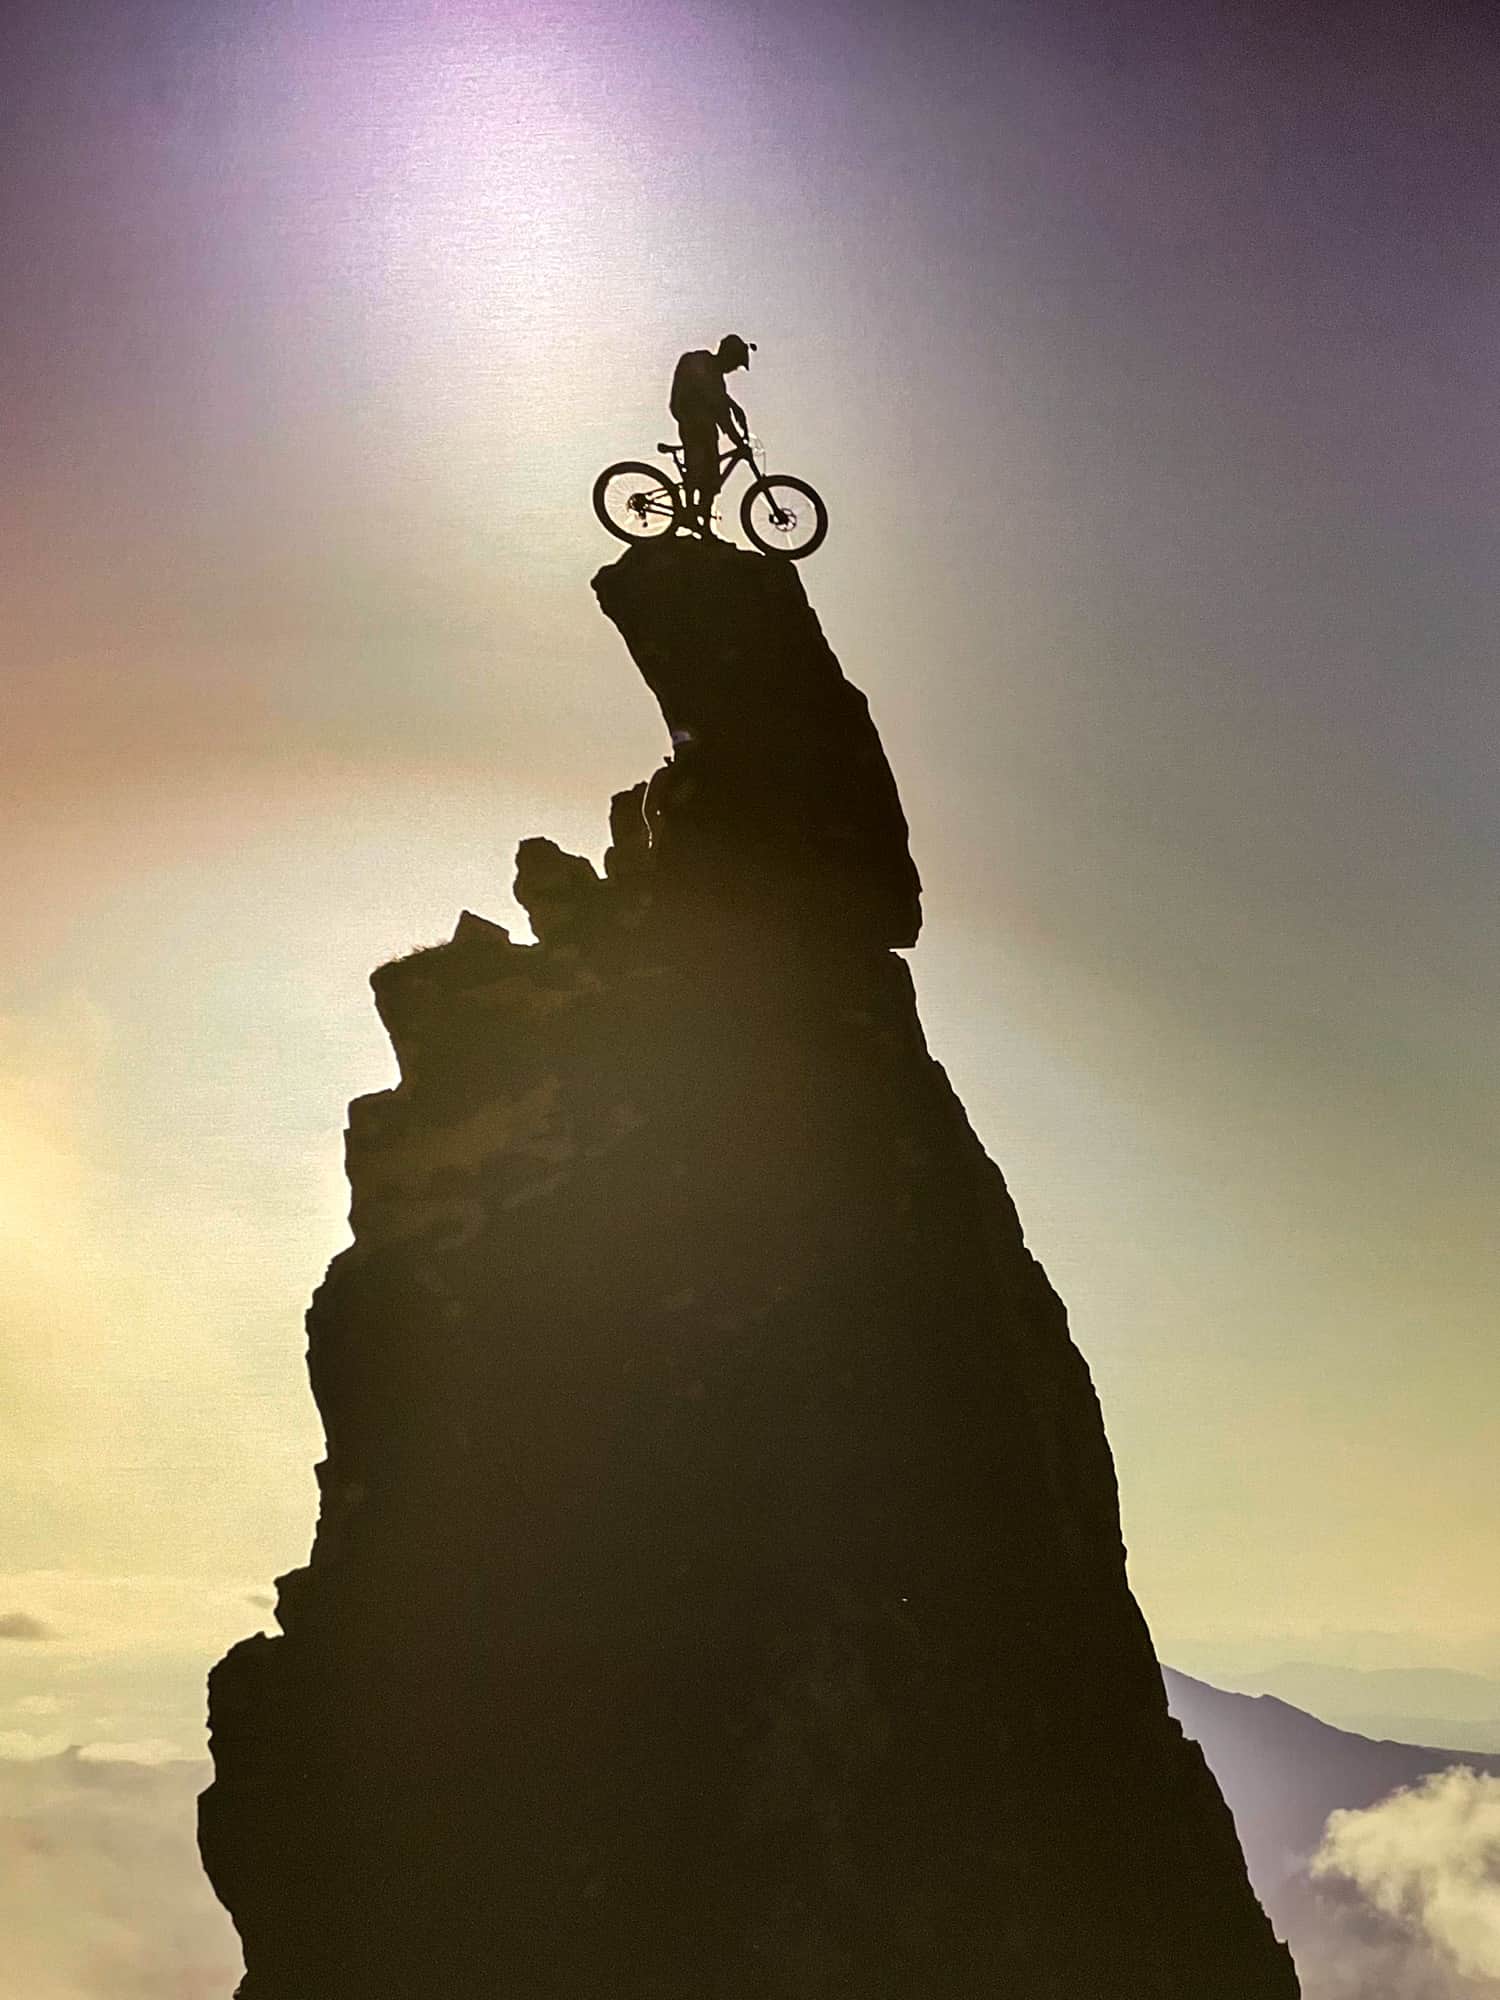 Verbier ebike cyclist on rocky peak